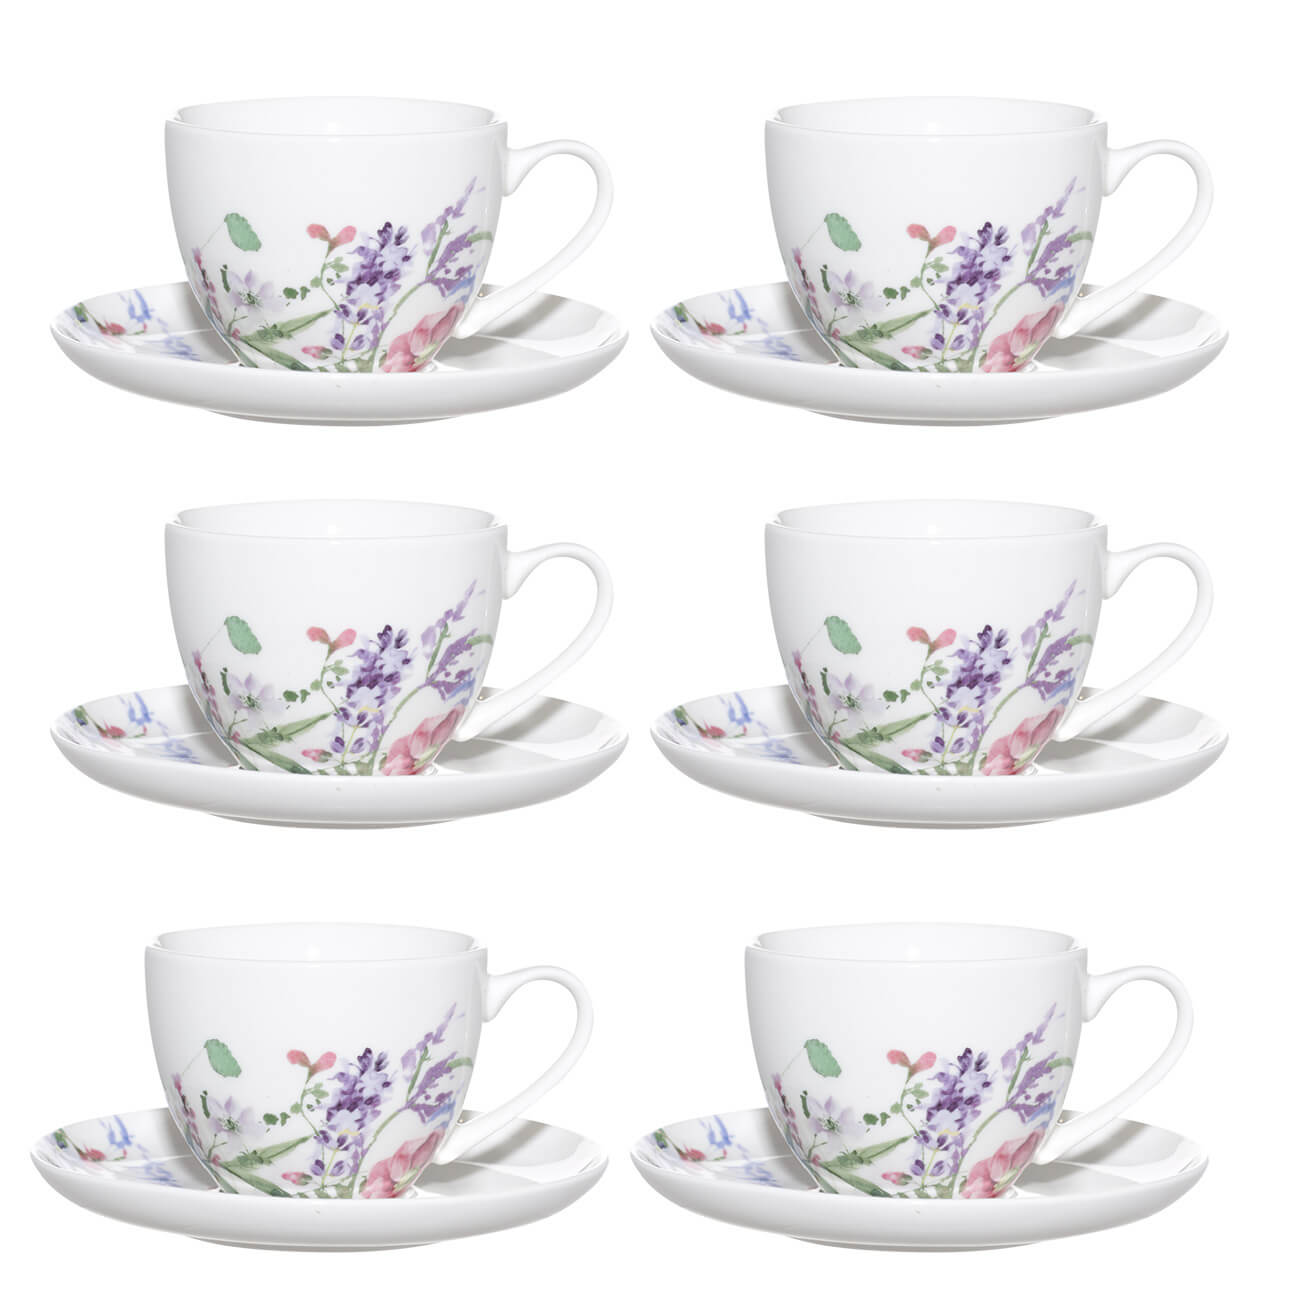 Пара чайная, 6 перс, 12 пр, 220 мл, фарфор N, Лиловые цветы, Meadow mauve